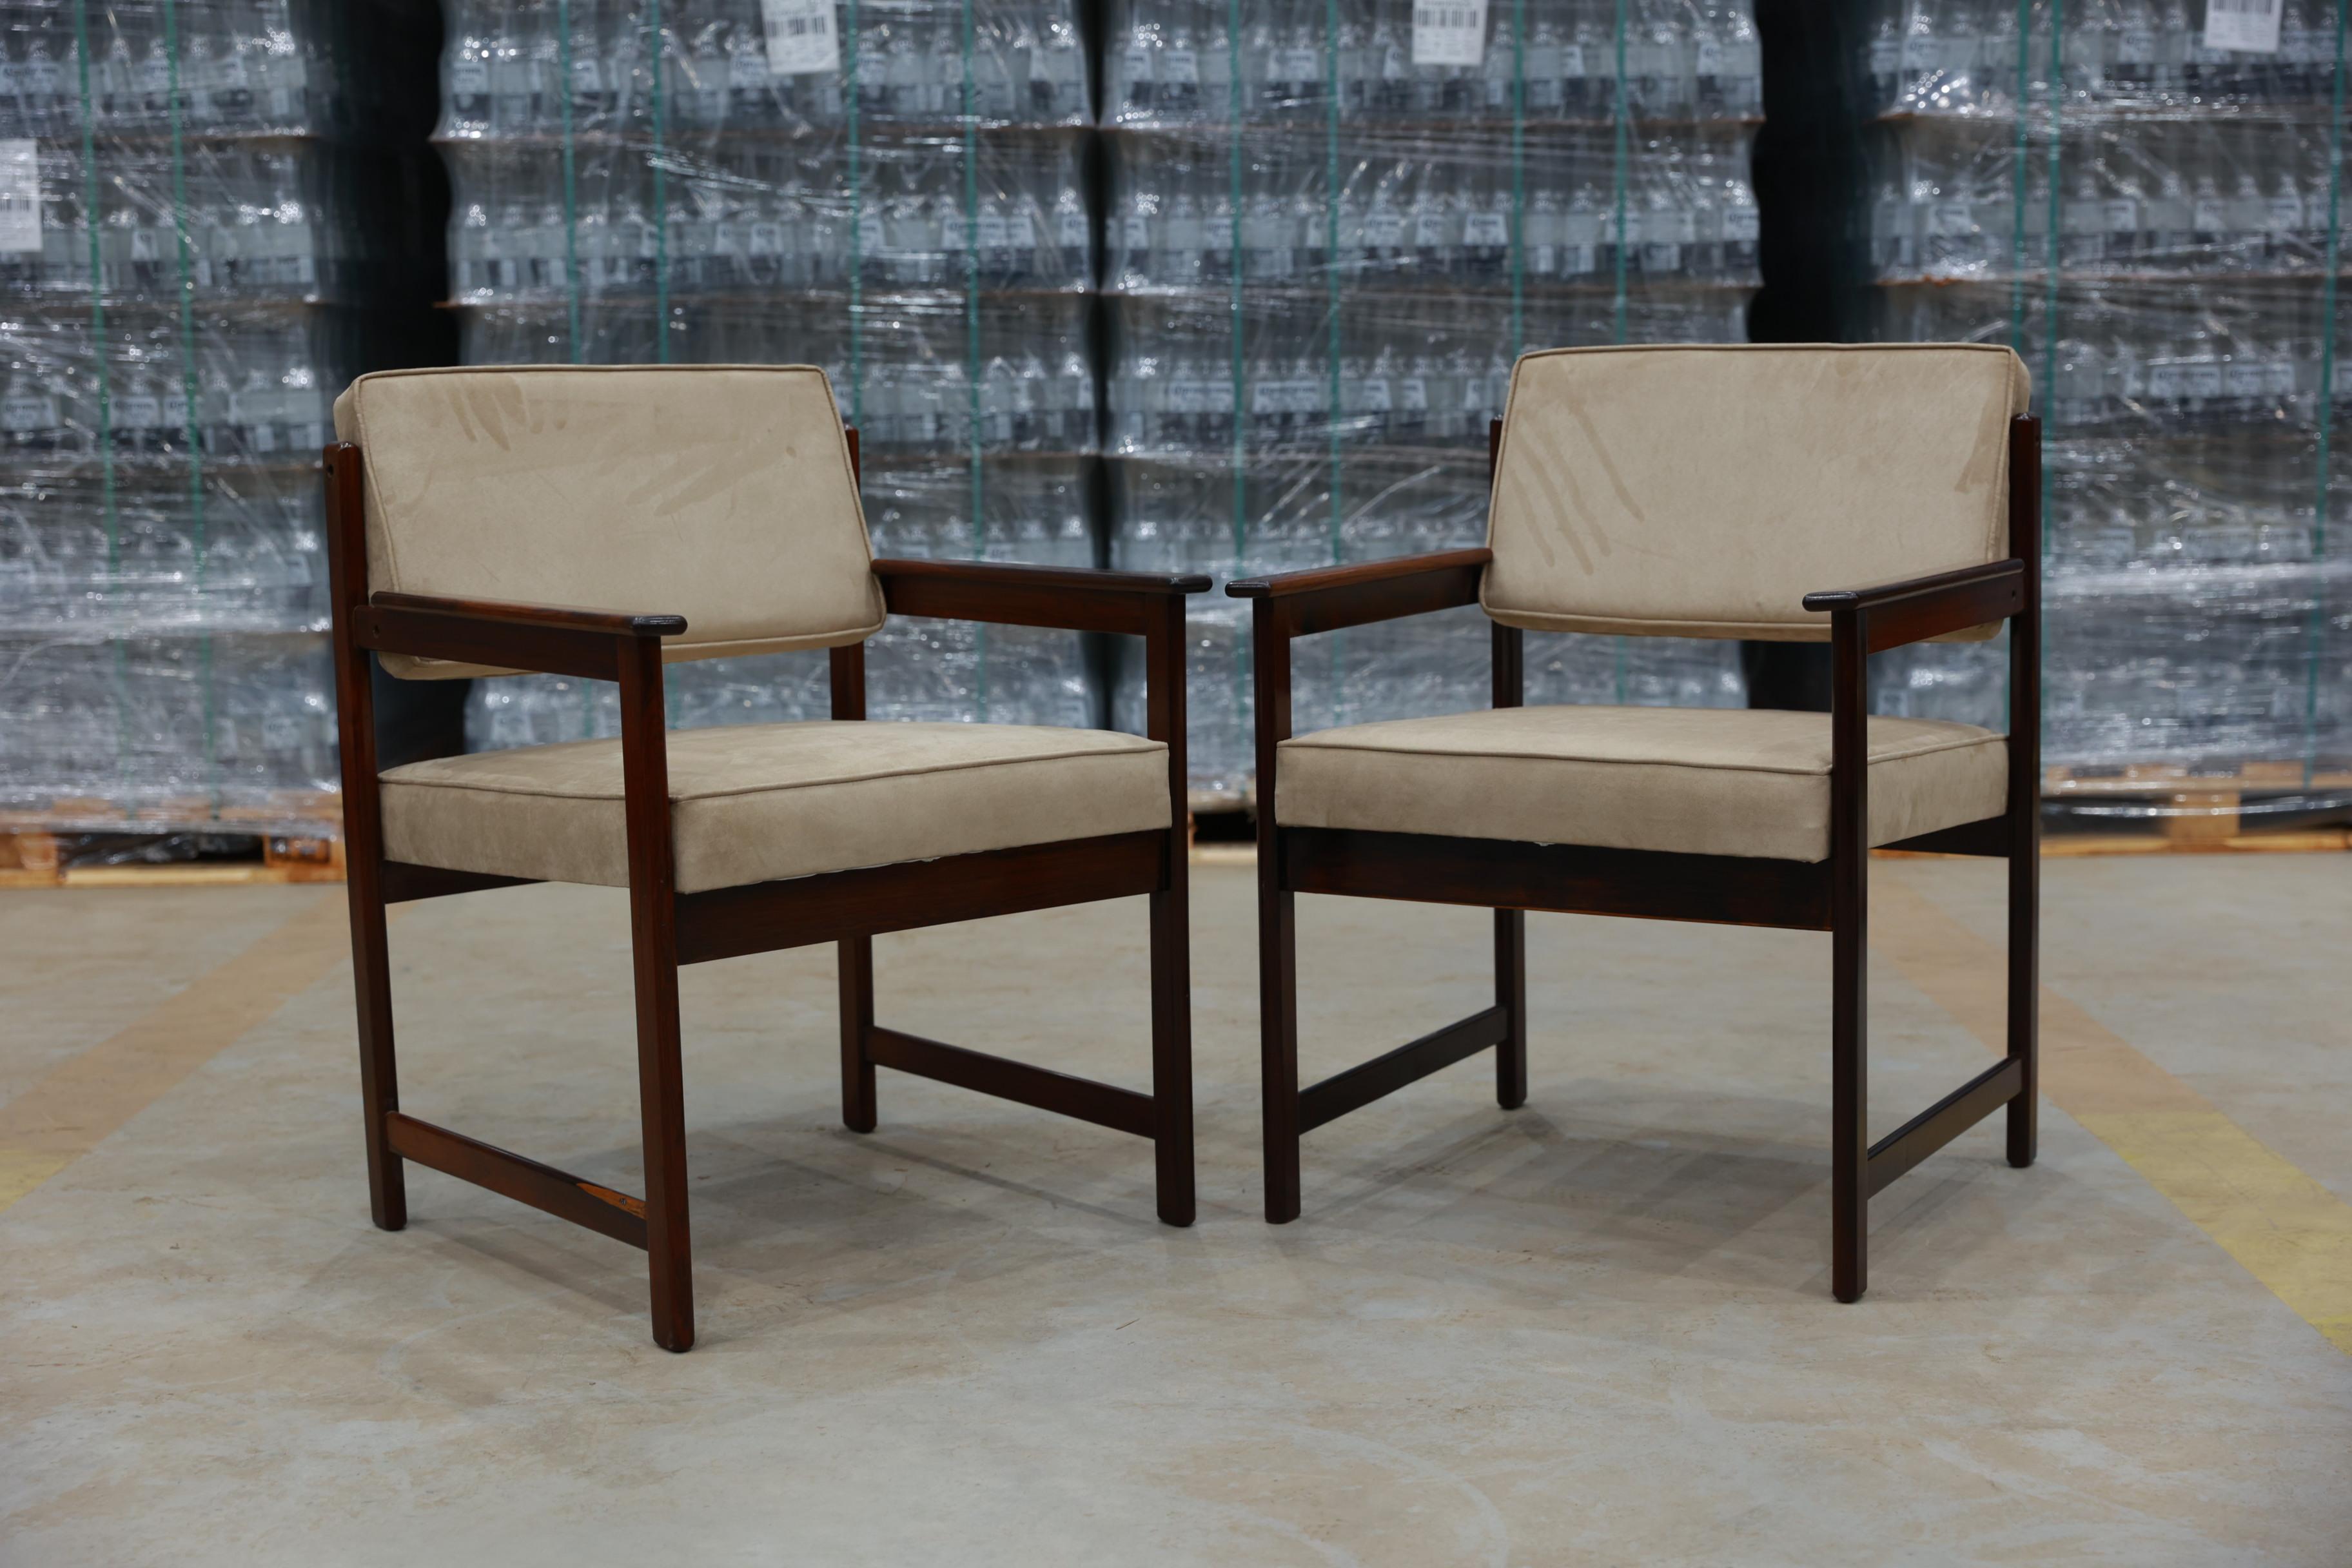 Disponibles dès à présent, ces fauteuils de style By Design Modern en bois dur et tissu beigeF conçus  de Jorge Jabour pour Moveis Cantu sont magnifiques !

Ces joyaux ont été conçus par Jorge Jabour Mauad et réalisés par Cantù Móveis e Interiores